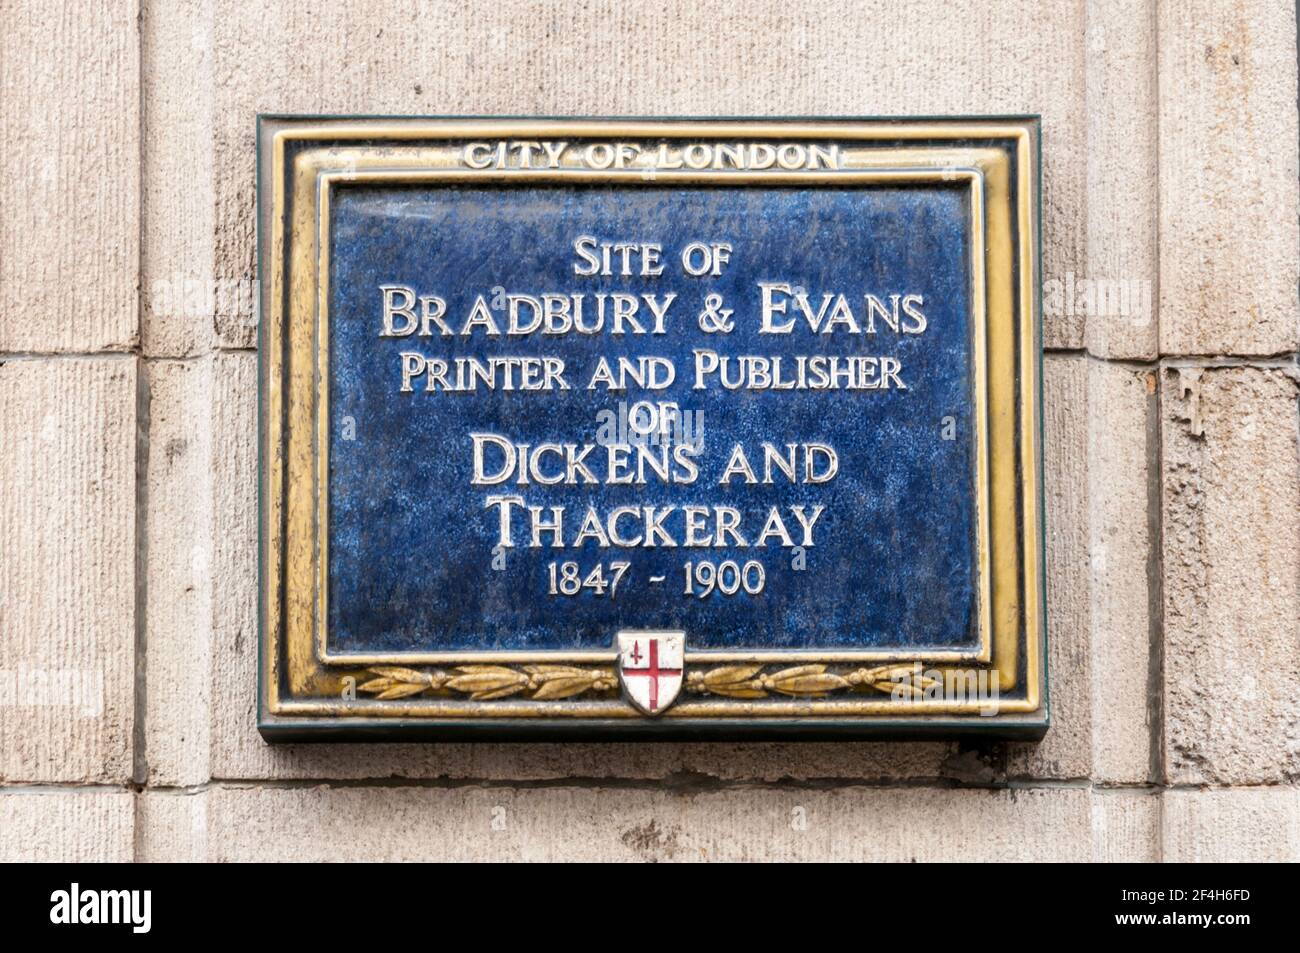 Blaue Plakette der Stadt London auf dem Gelände von Bradbury & Evans in der Fleet Street. Der Druckerverlag von Dickens & Thackeray. Stockfoto